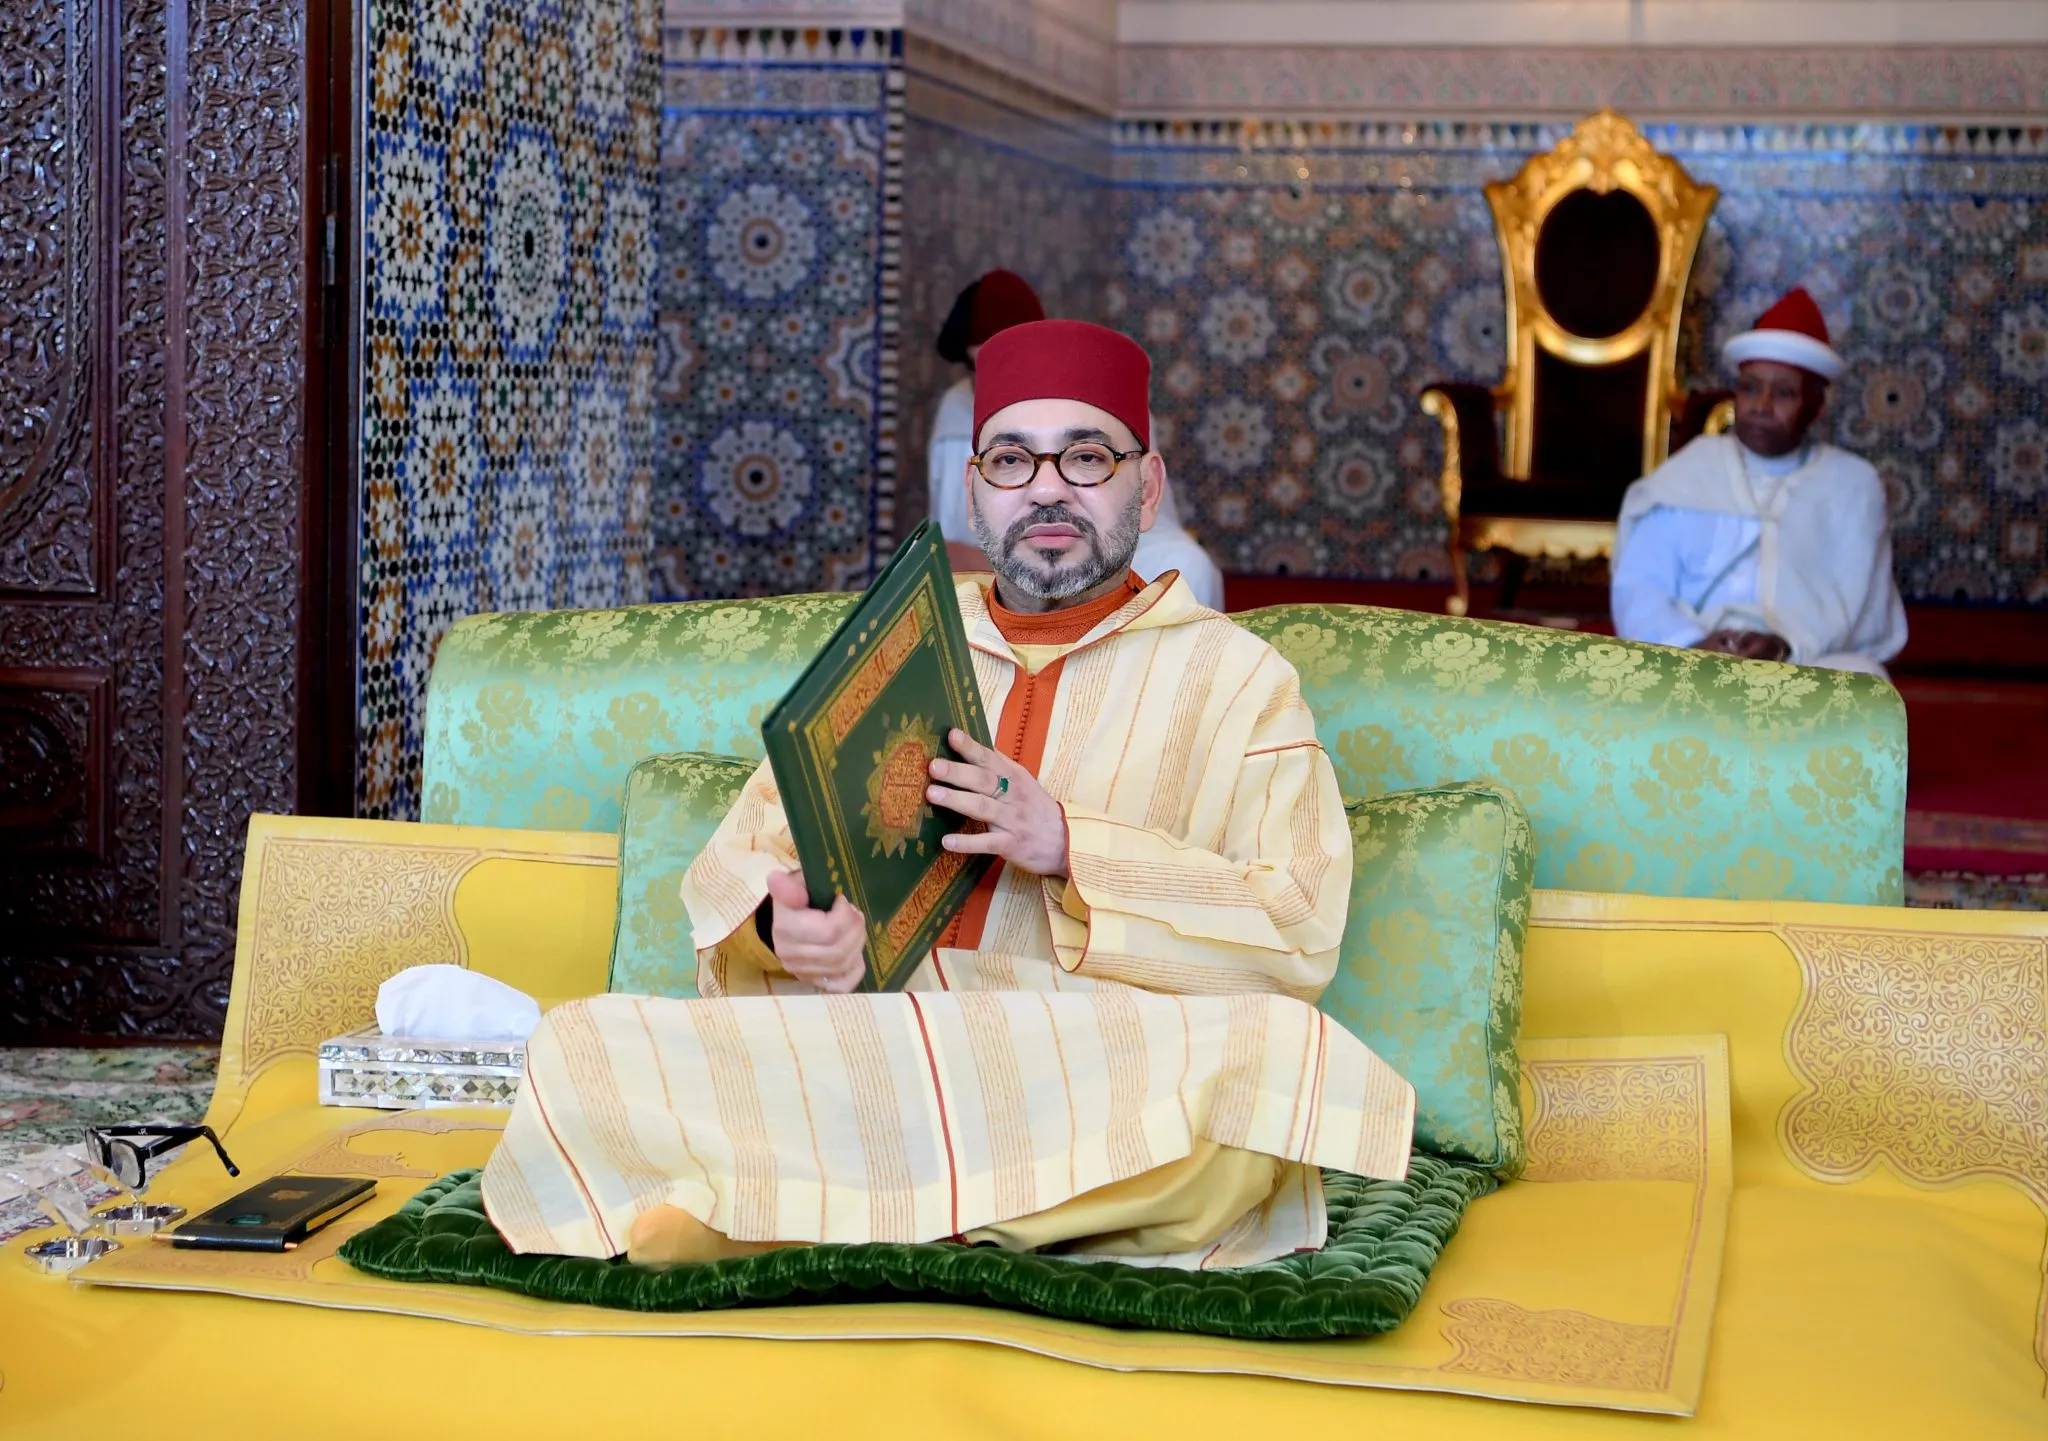 الملك يوجه رسالة للحجاج المغاربة ويدعوهم ليكونوا بمثابة سفراء للمغرب وحضارته العريقة وهويته